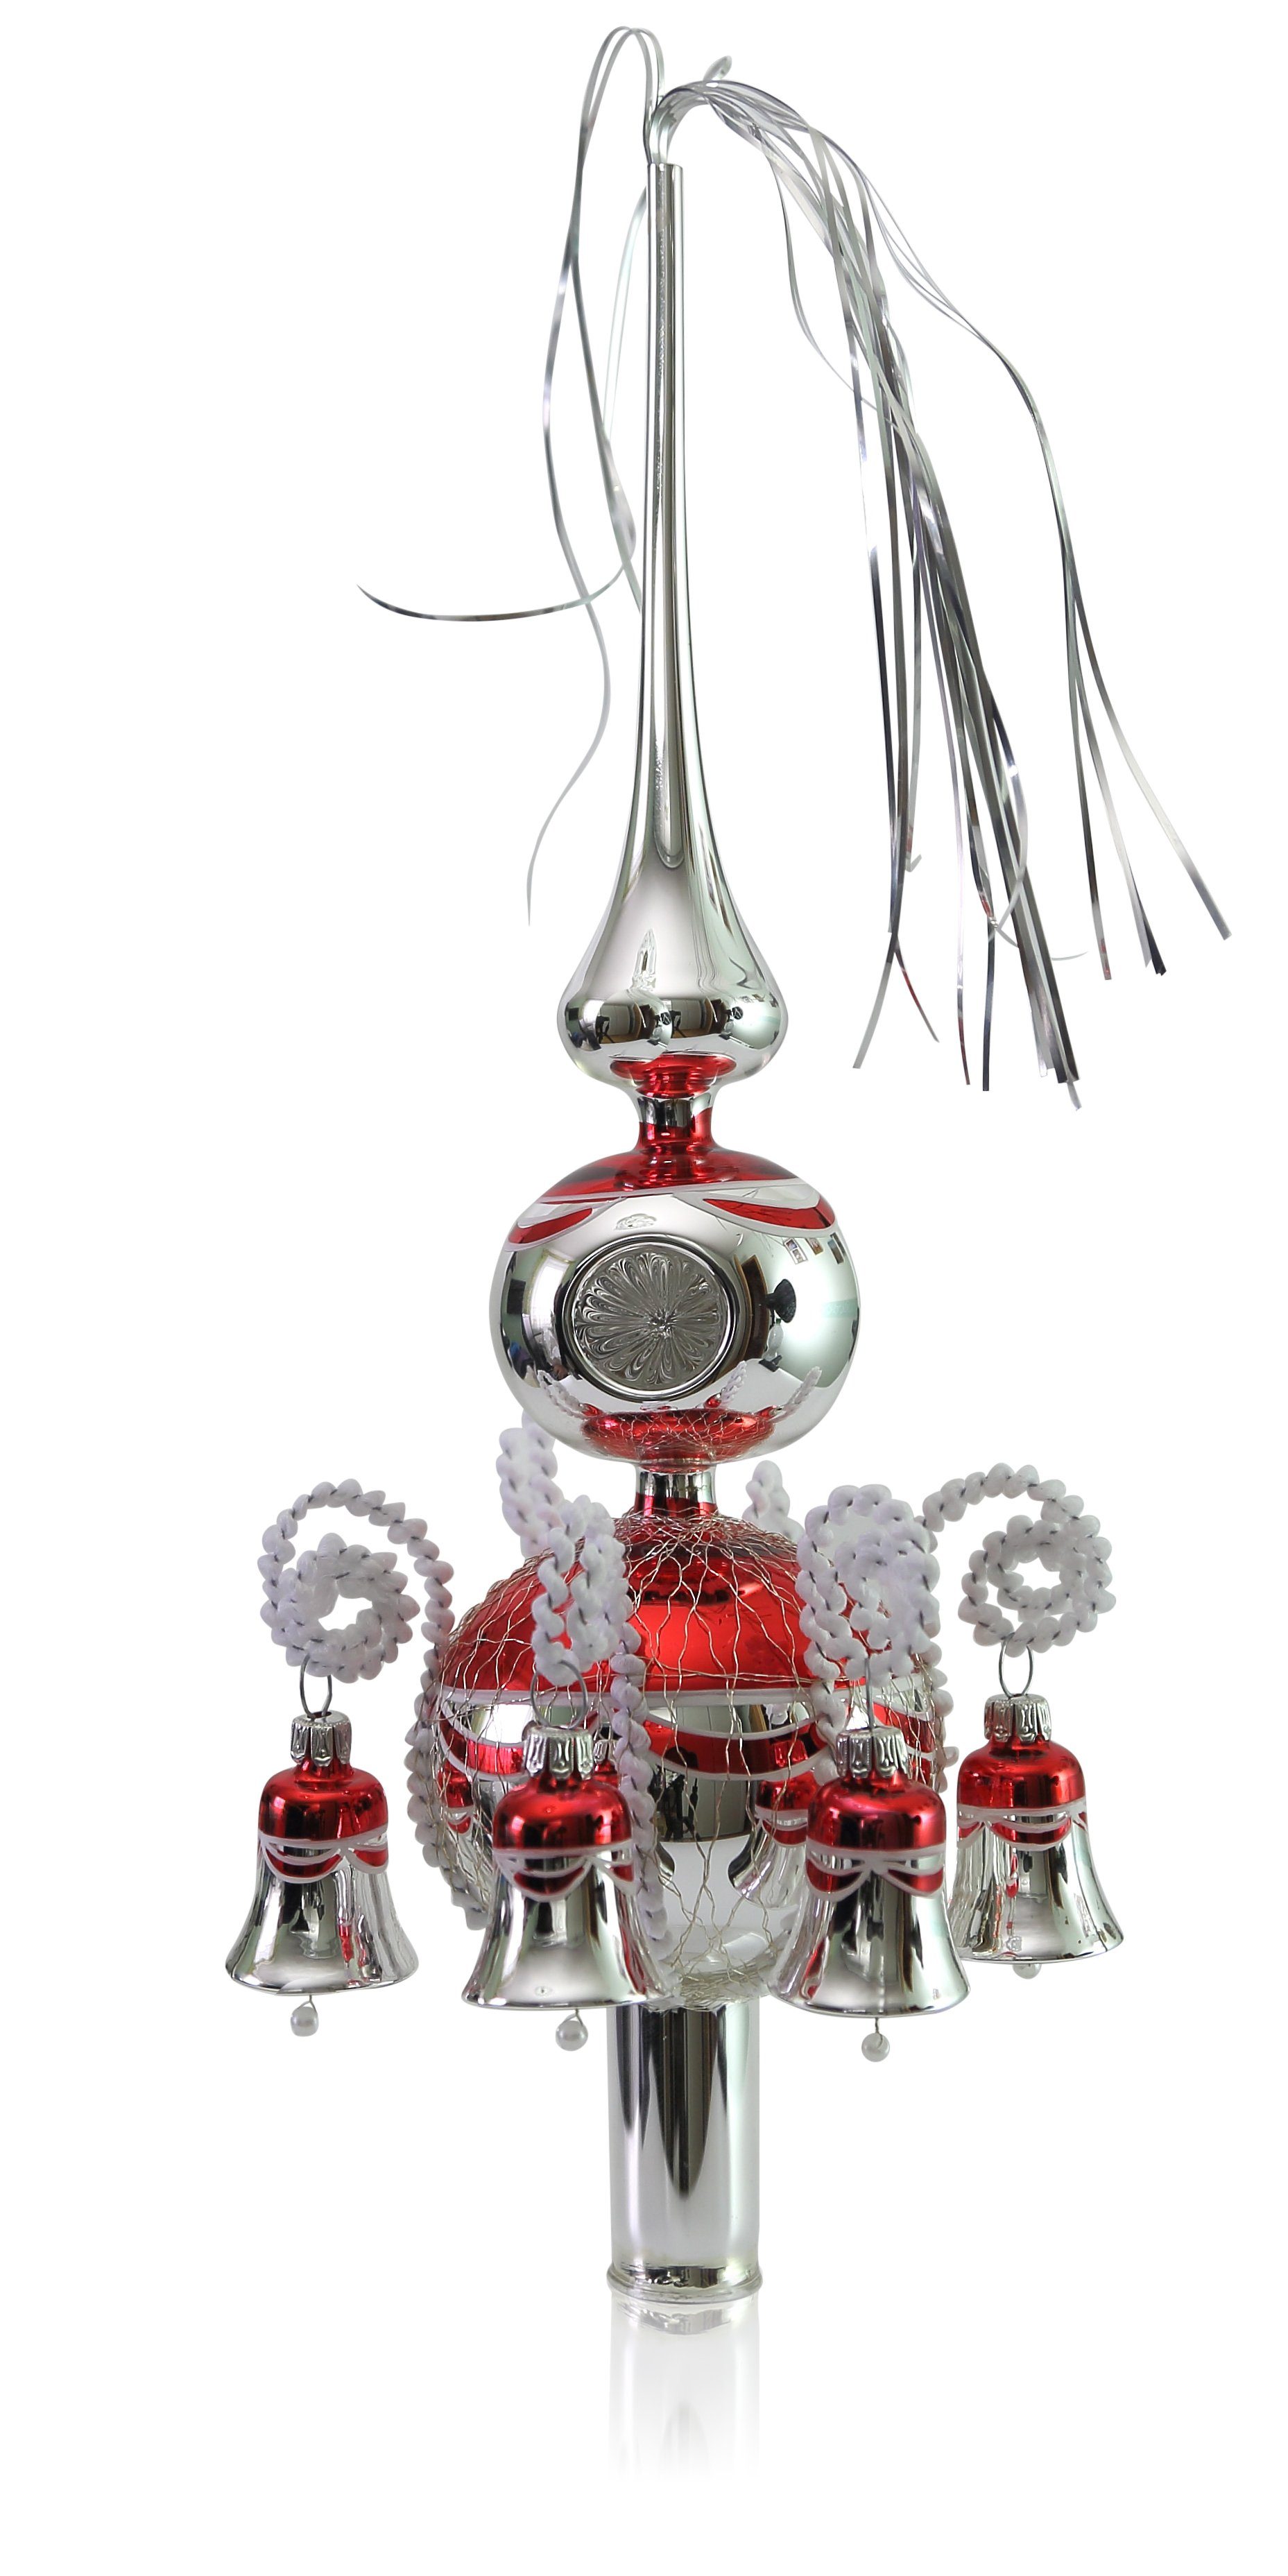 Lauschaer Glas Christbaumspitze Spitze umsponnen mit Leonischem Draht und Einstich in der Kugel Silber mit rot